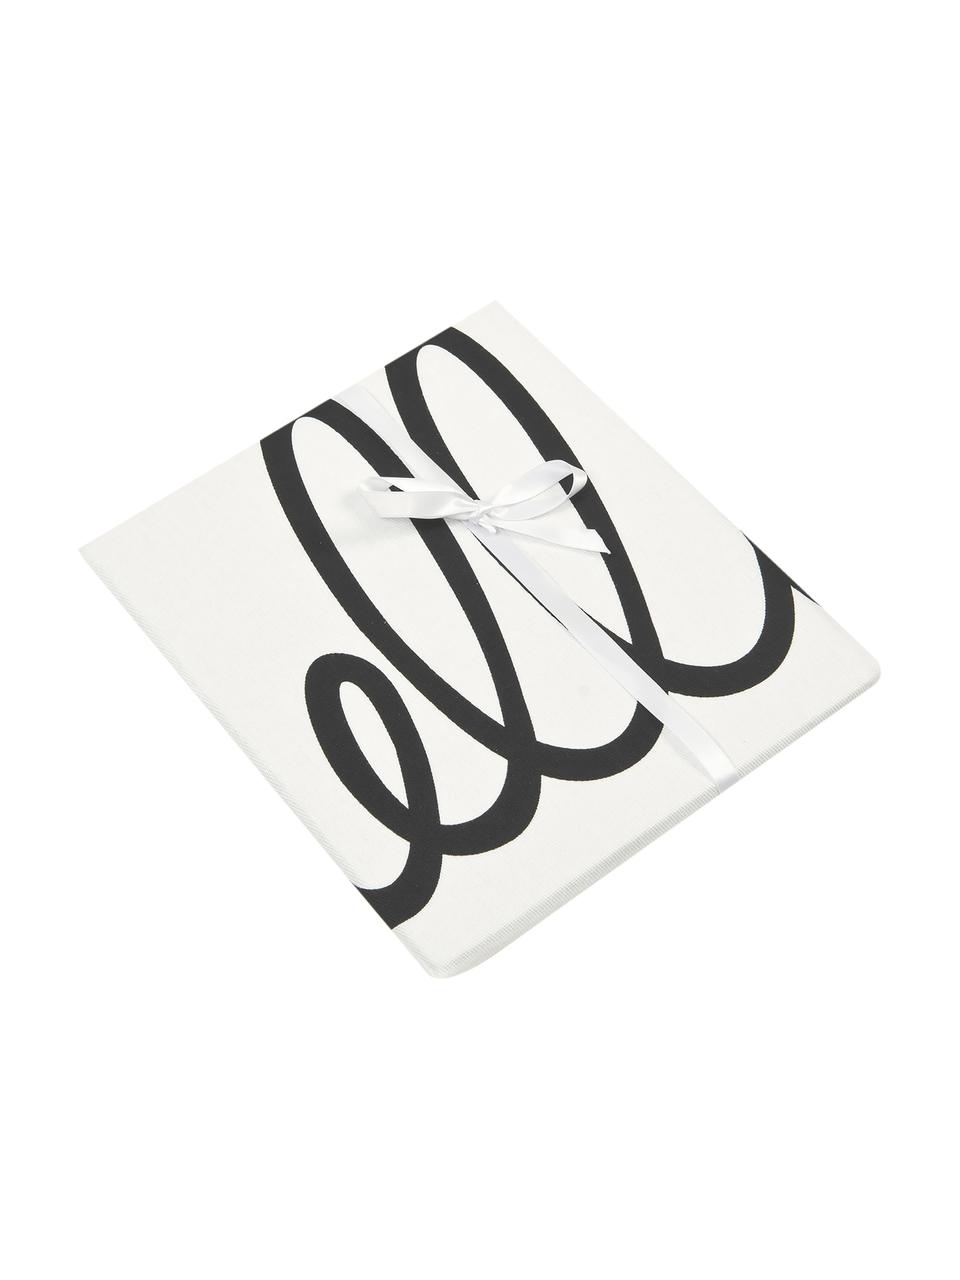 Kissenhülle Hello mit Schriftzug in Schwarz/Weiss, 100% Baumwolle, Panamabindung, Schwarz, Cremeweiss, 40 x 40 cm